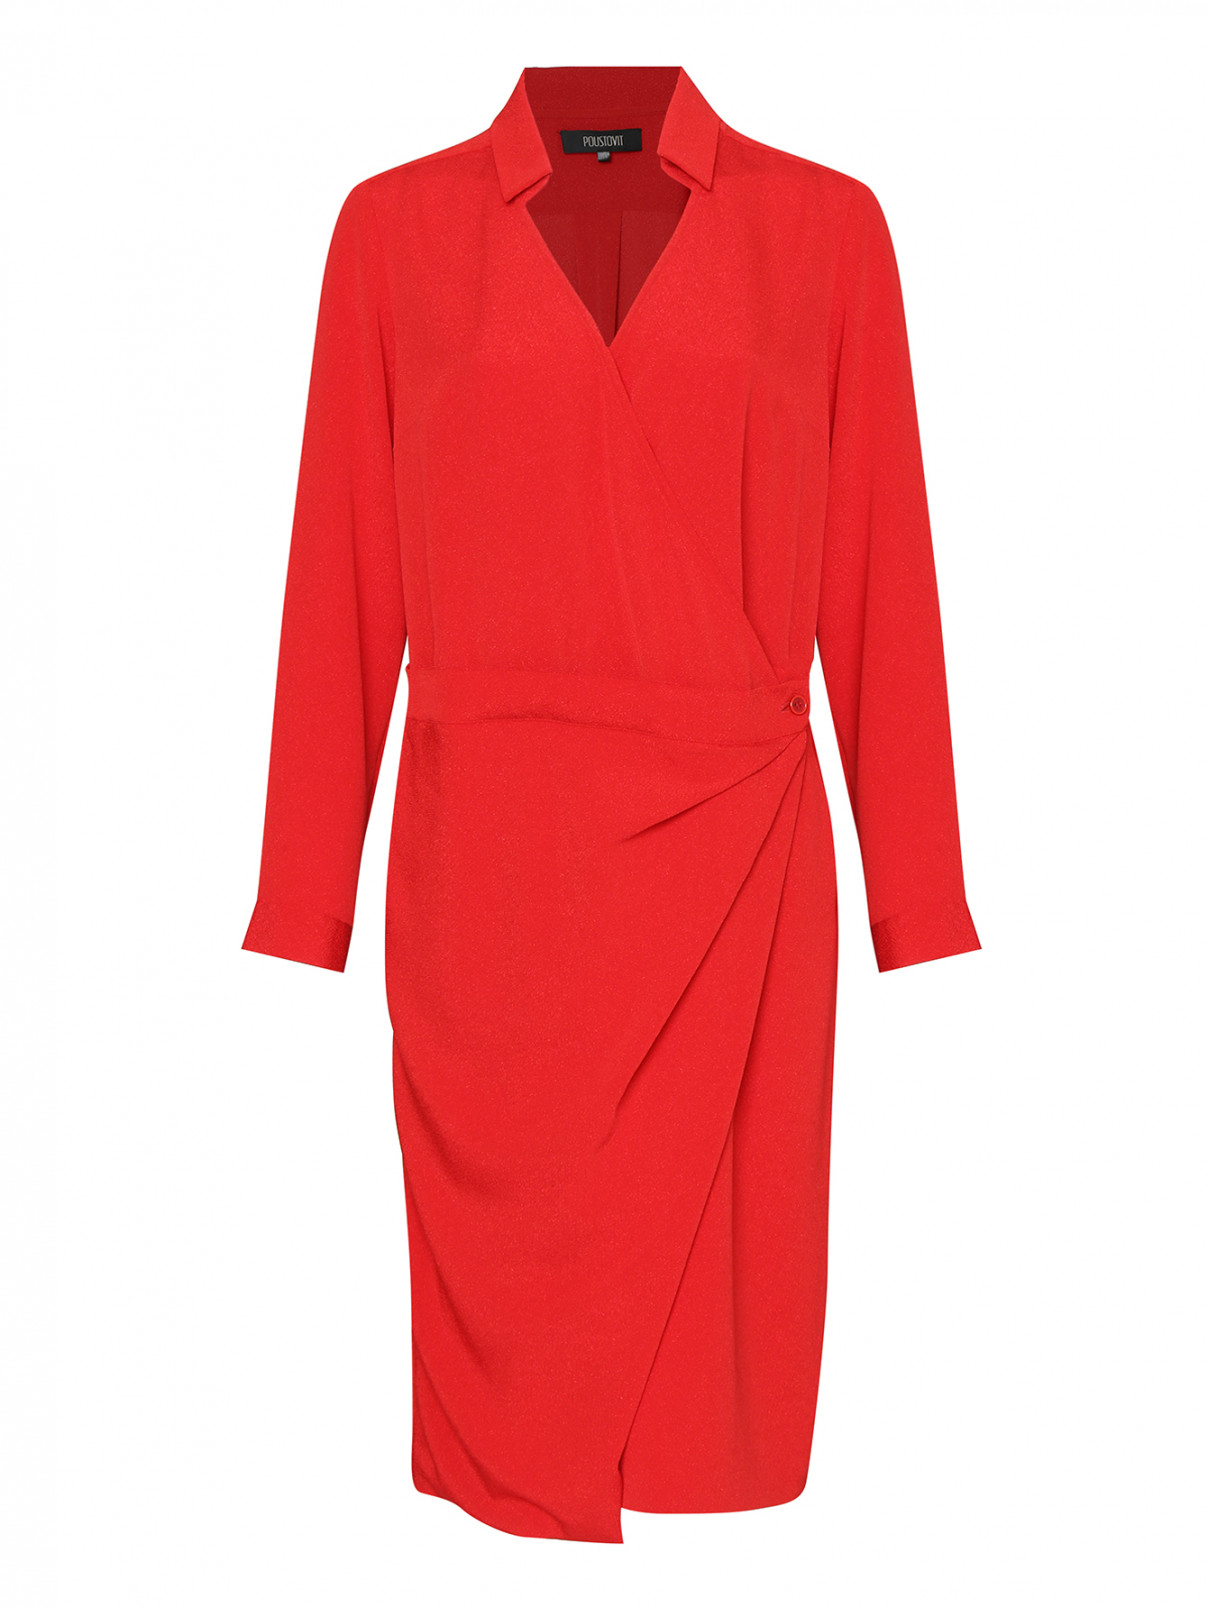 Платье-миди на запах Poustovit  –  Общий вид  – Цвет:  Красный